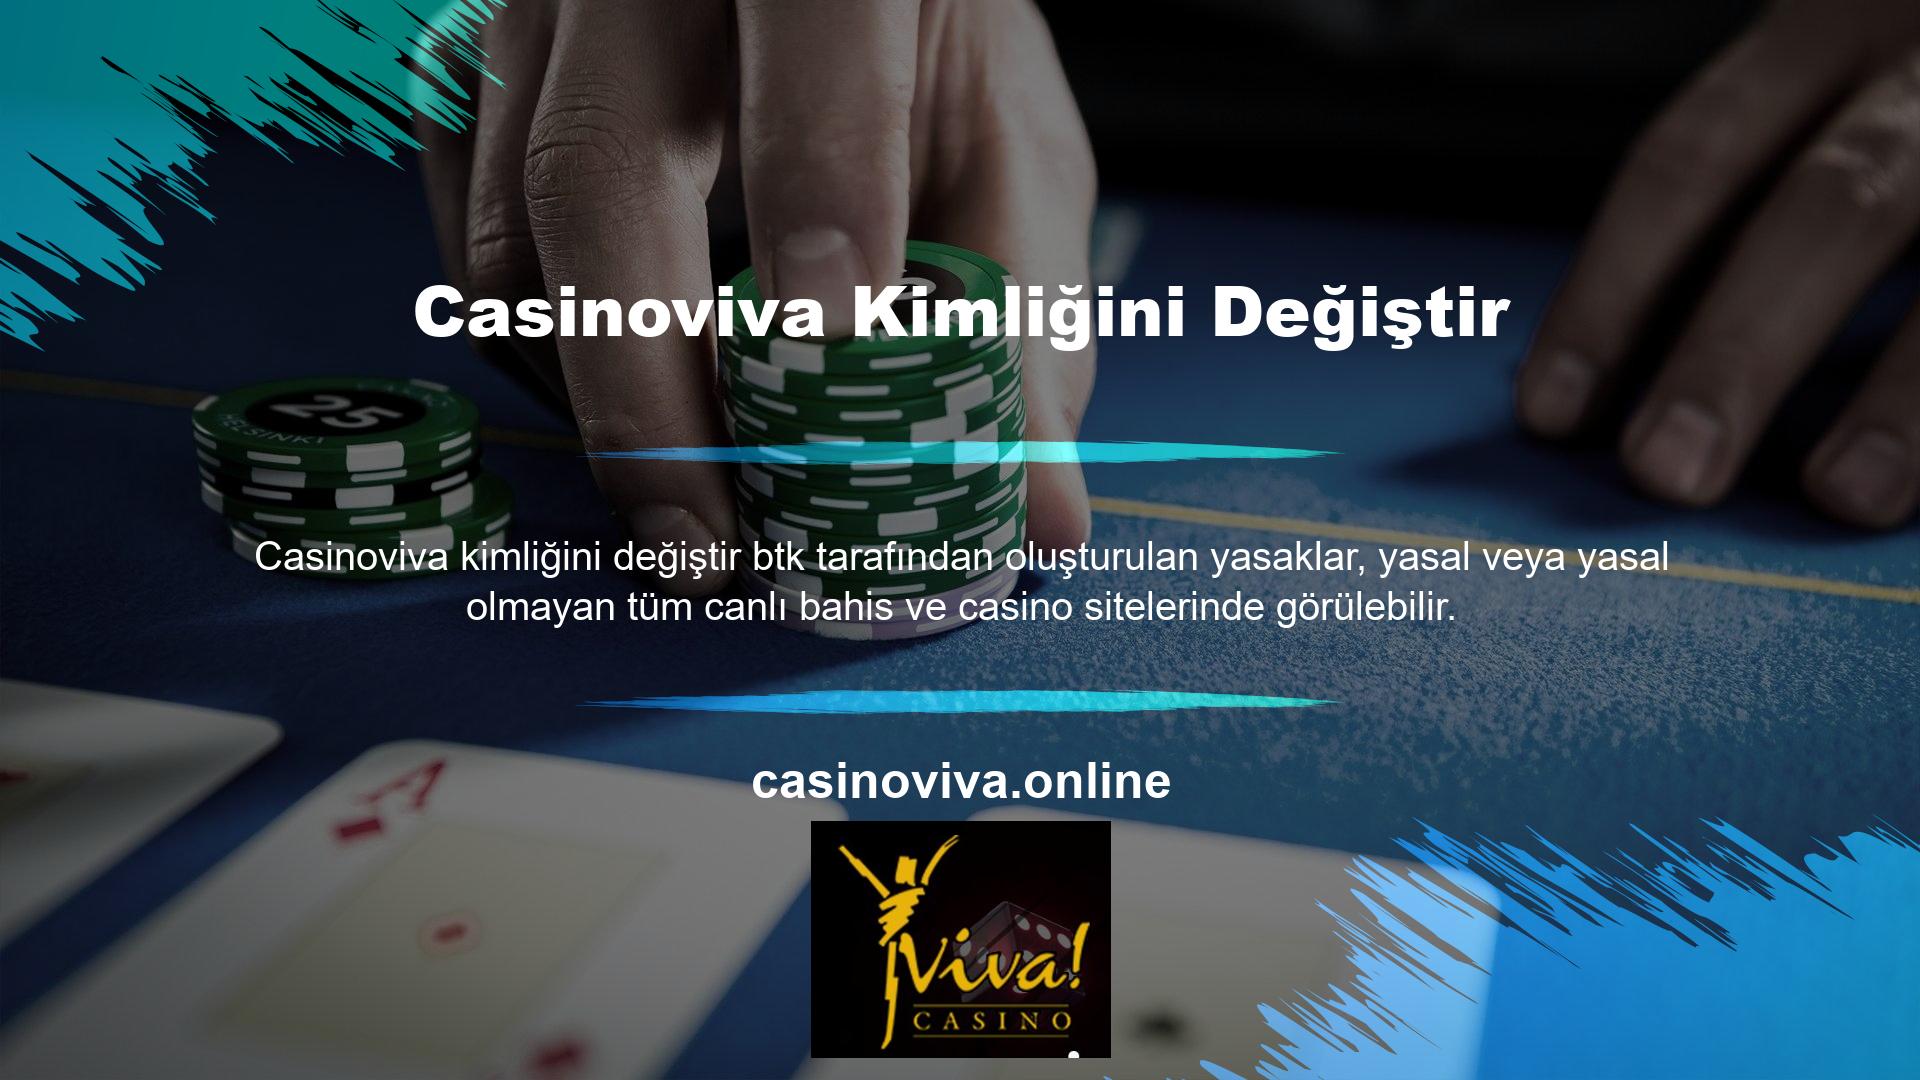 Casinoviva web sitesi, giriş adresini güncelleyerek sorunu ilk günden itibaren düzeltti